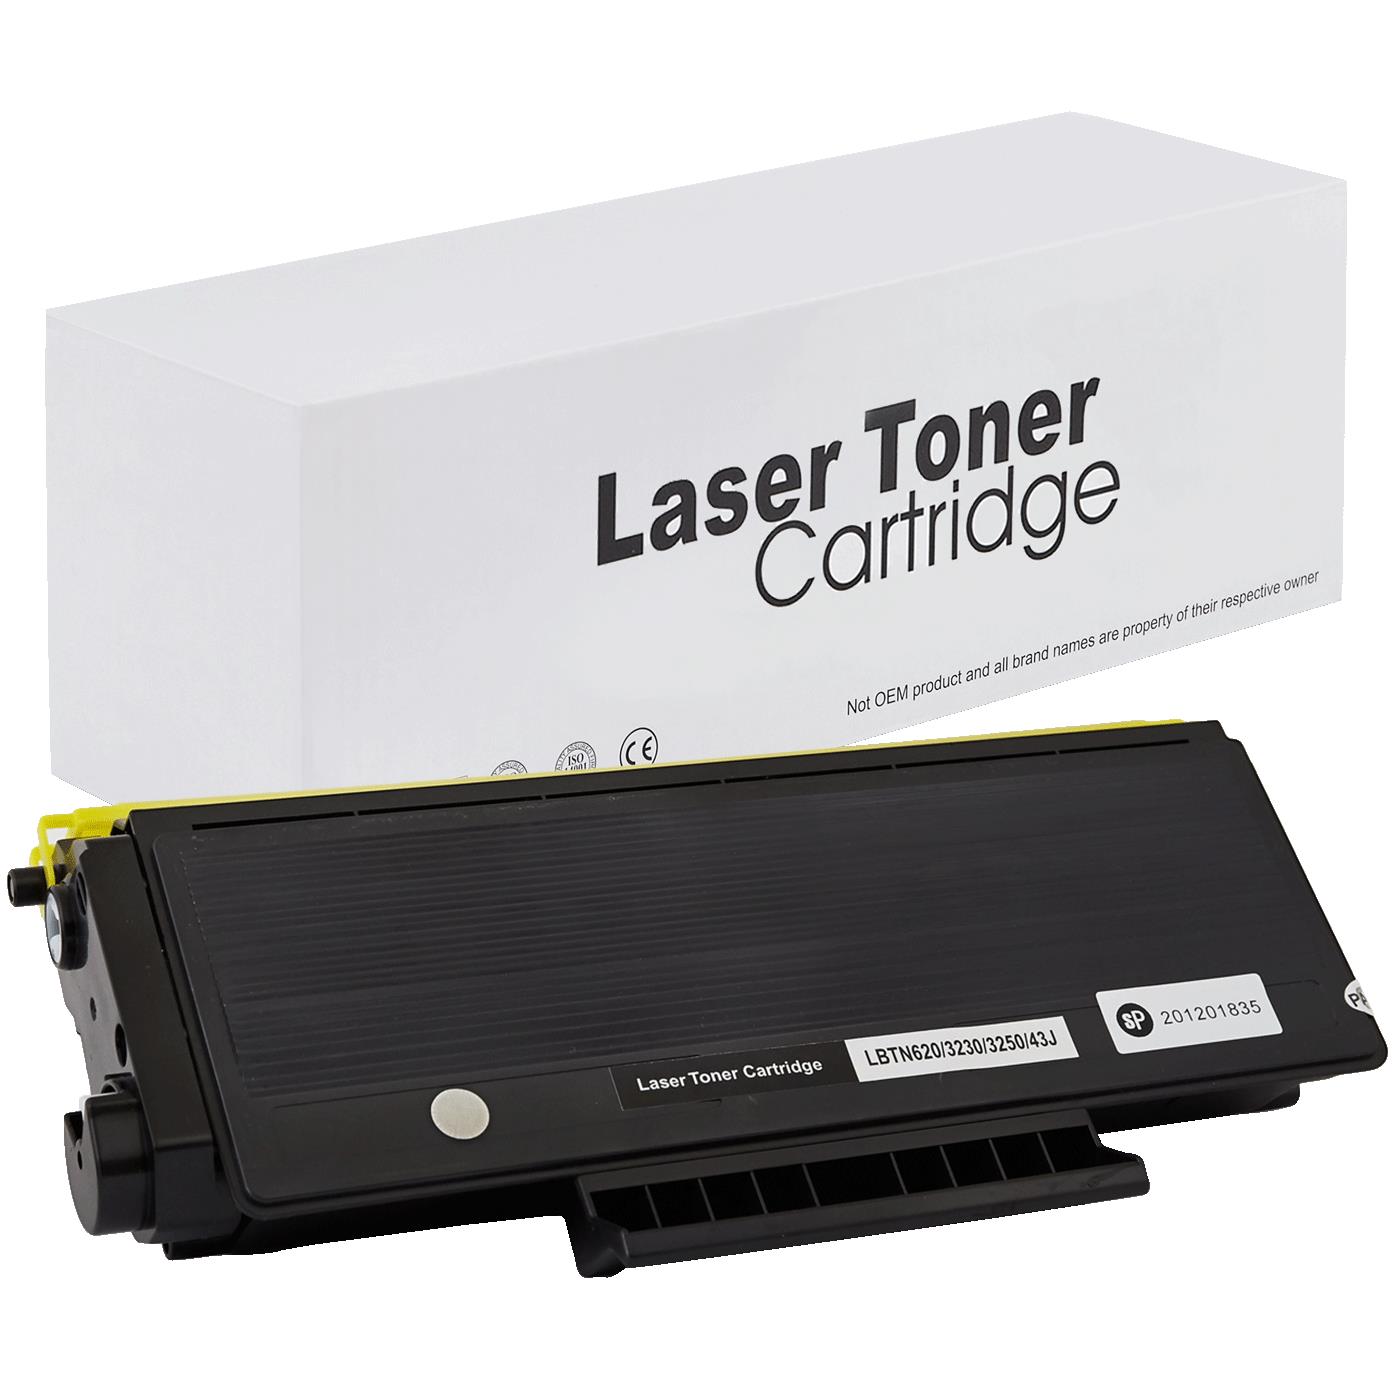 съвместима тонер касета за принтери и печатащи устройства на Brother HL 5350 DNLT Toner BR-3230 | TN3230. Ниски цени, прецизно изпълнение, високо качество.